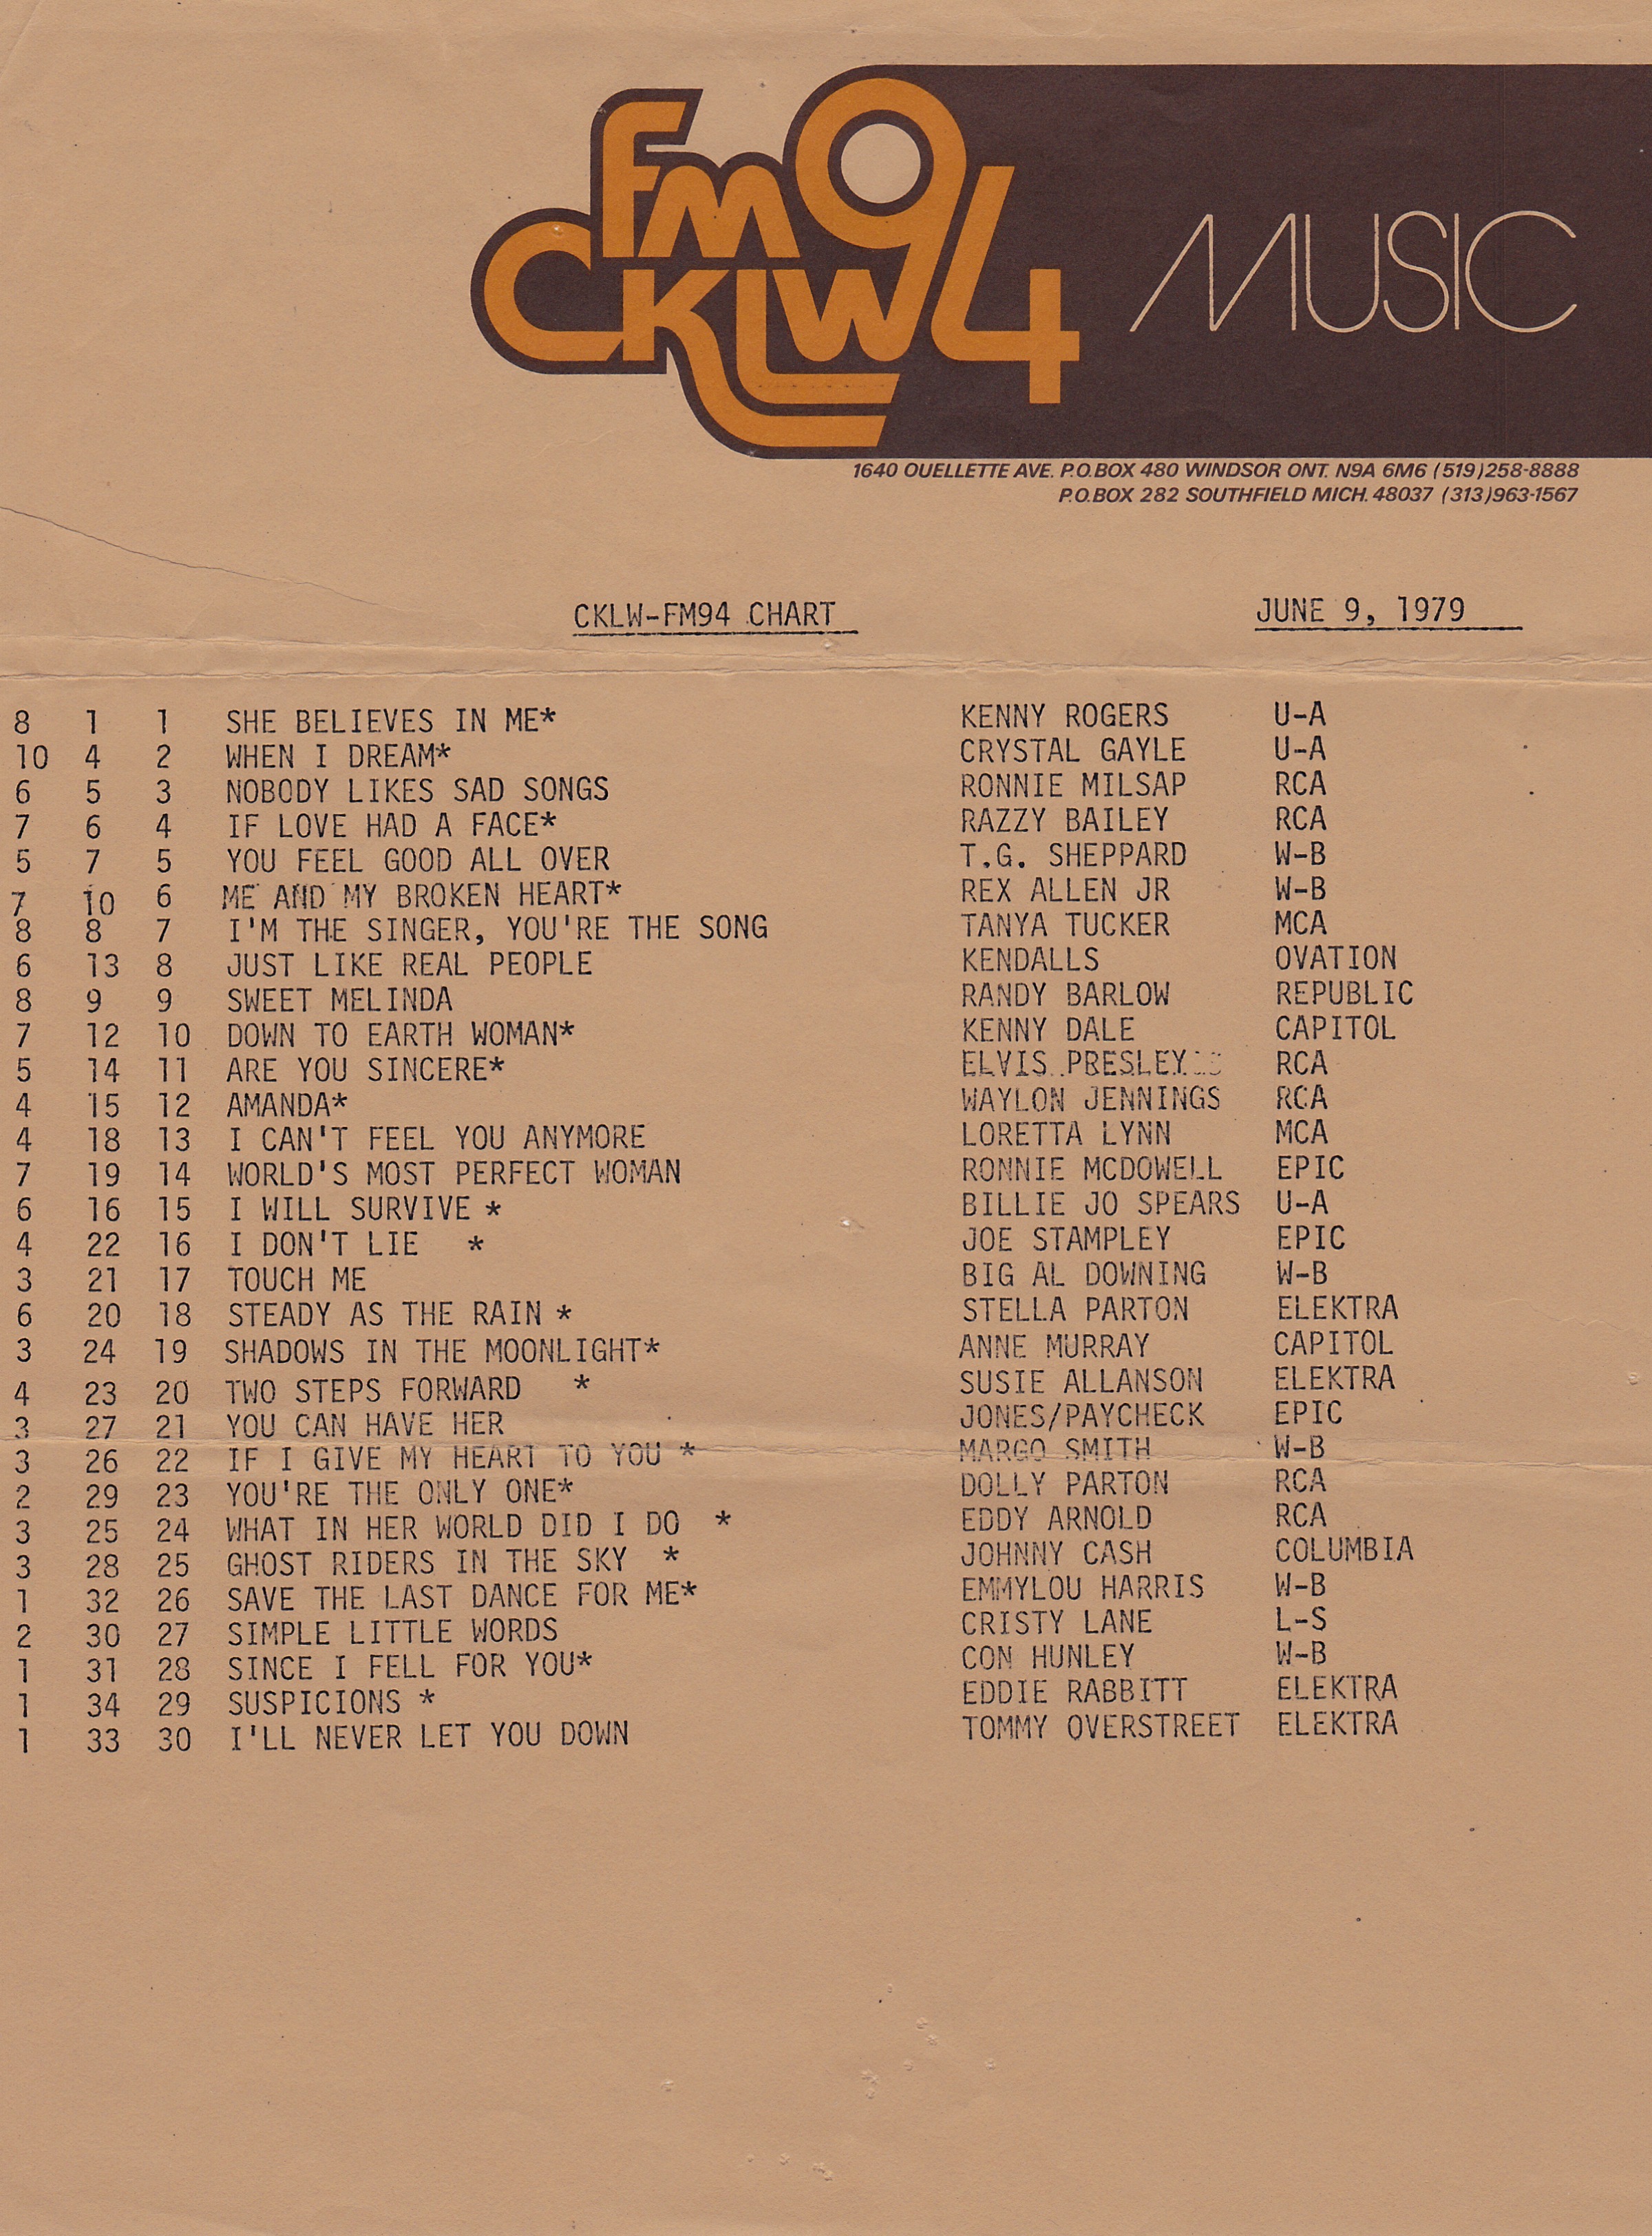 cklw fm 94 - june 9, 1979